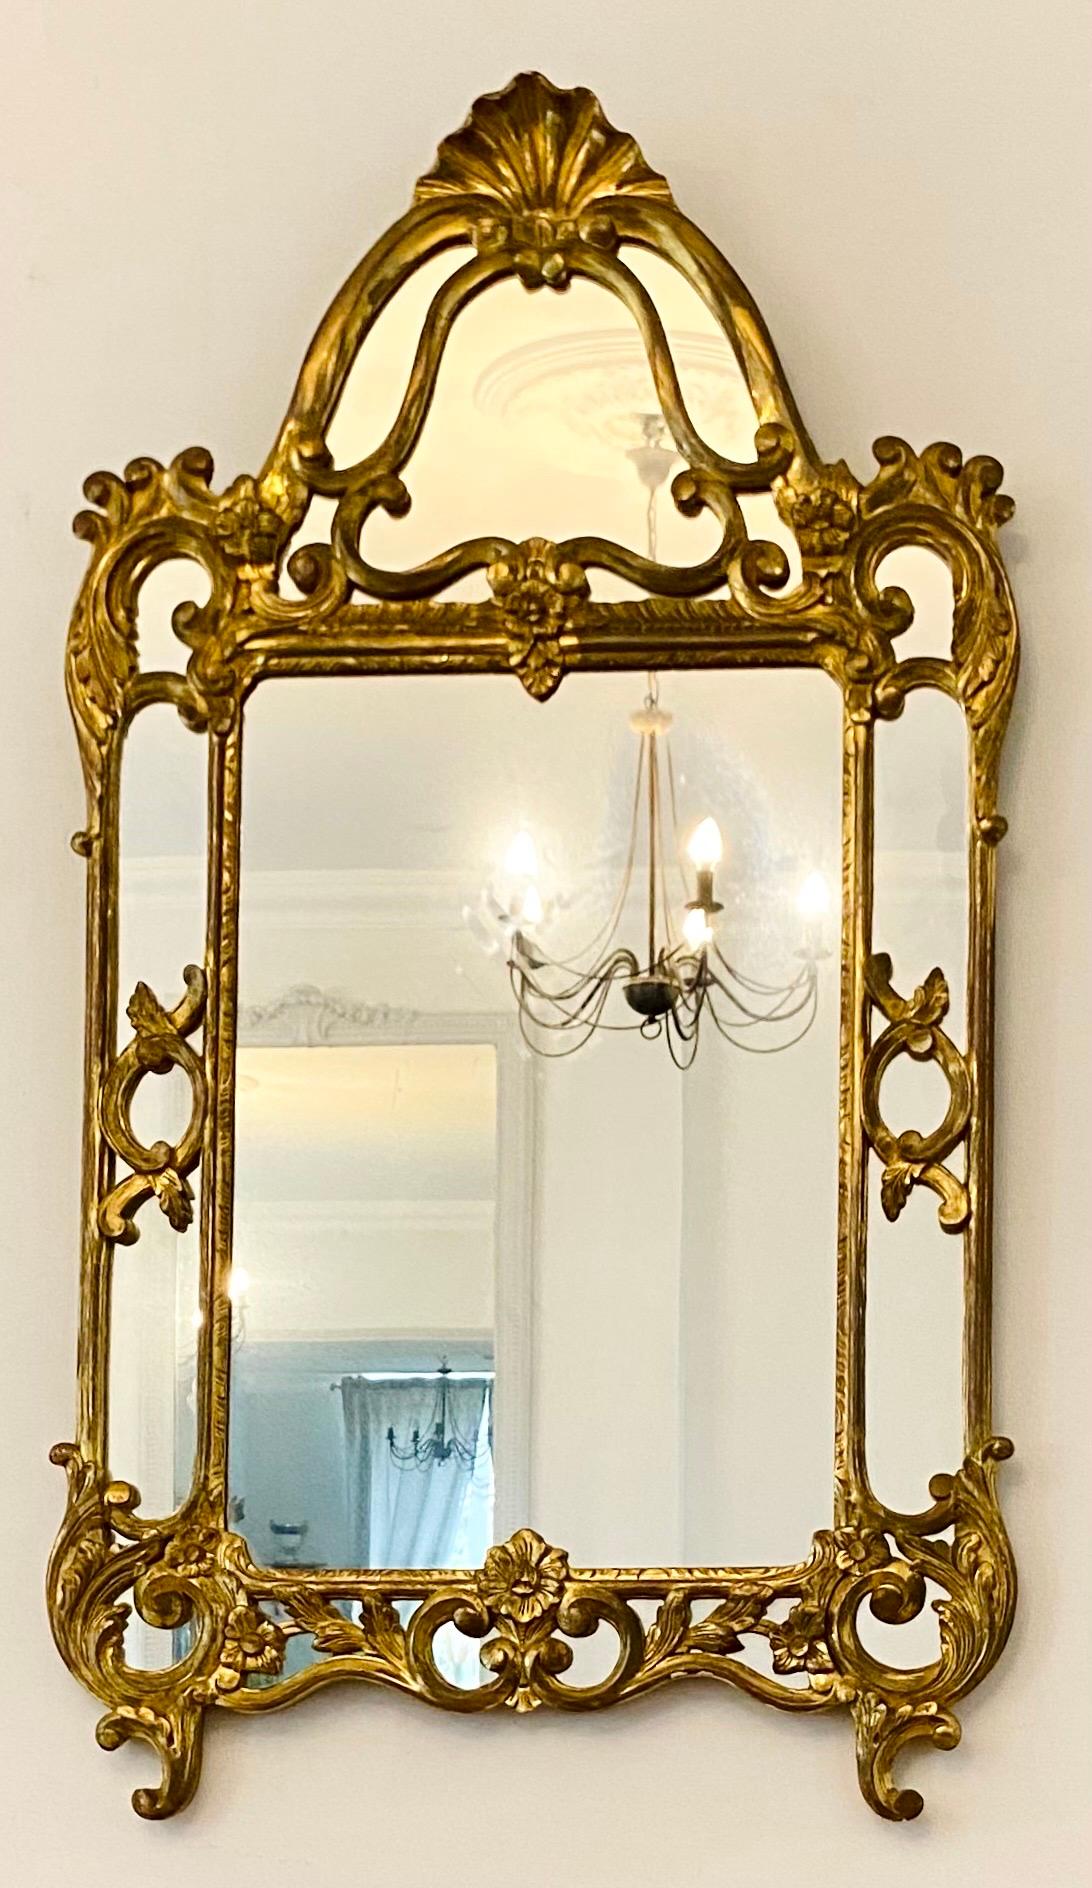 Wunderschöner Perlenspiegel im Louis XIV-Stil aus vergoldetem Holz.
Im Stil der italienischen Spiegel, Barockstil.
Dekor aus ineinander verschlungenem Laub und Blumen.
Giebel mit Muscheln verziert.
Wunderschön gearbeiteter doppelter Goldrahmen.
Alle